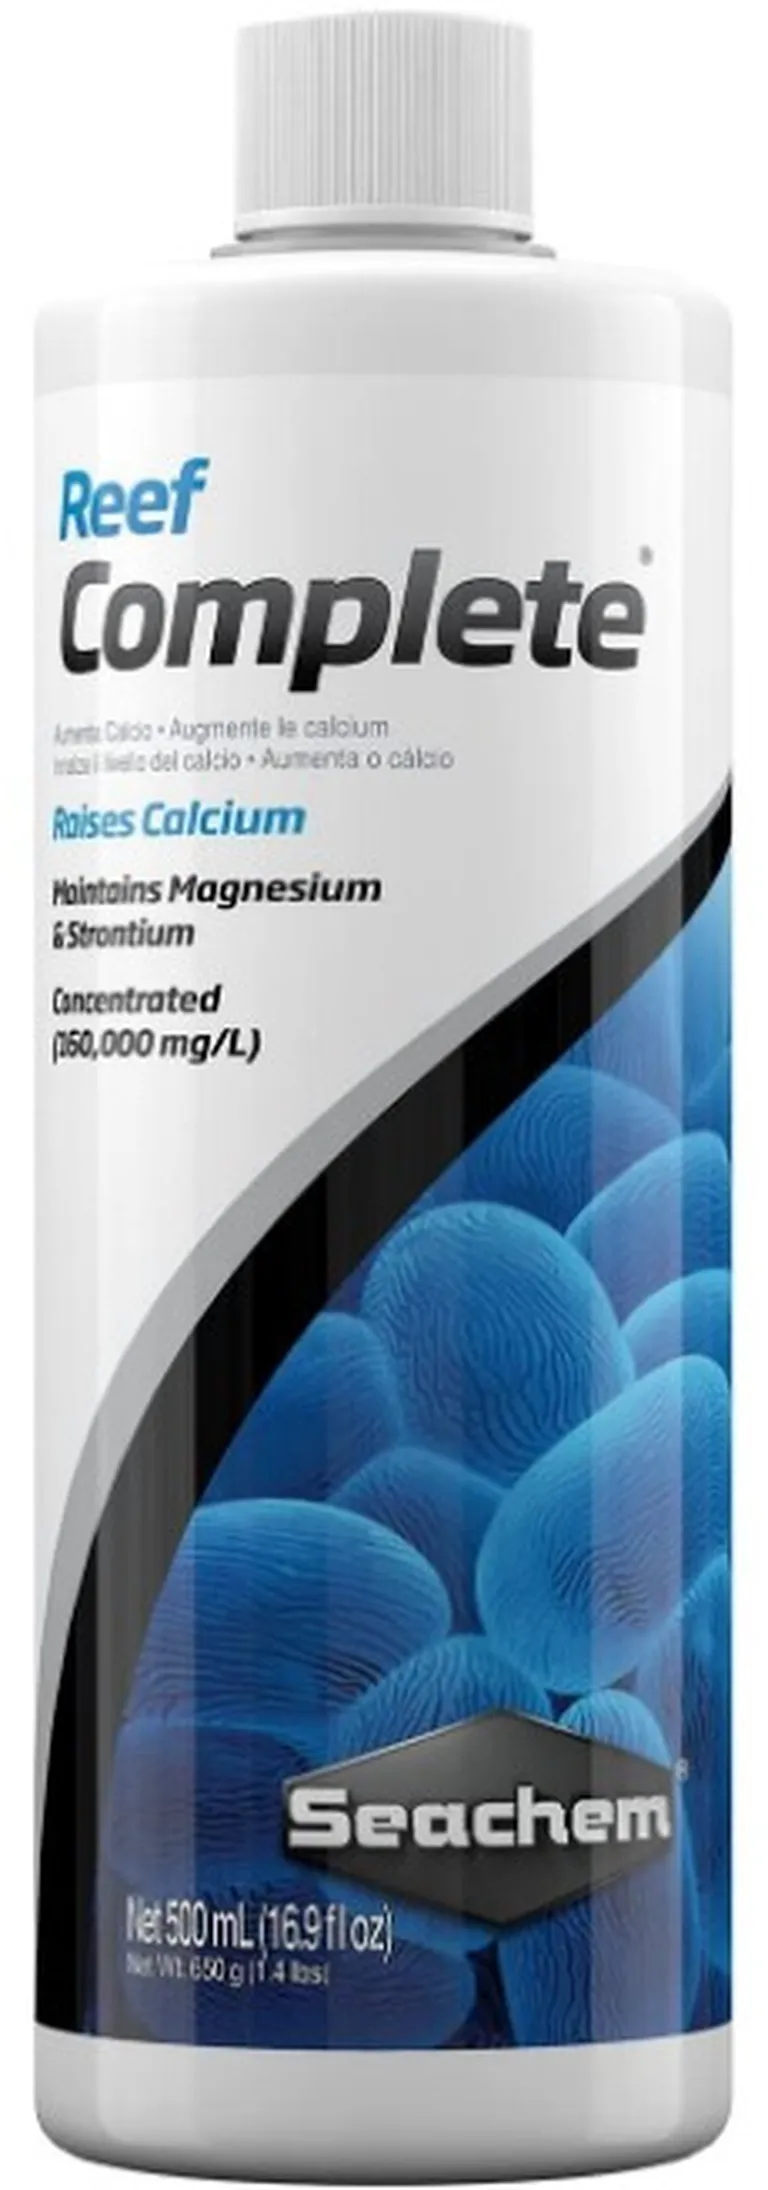 Seachem Reef Complete Raises Calcium and Maintains Magnesium and Strontium in Aquariums Photo 1